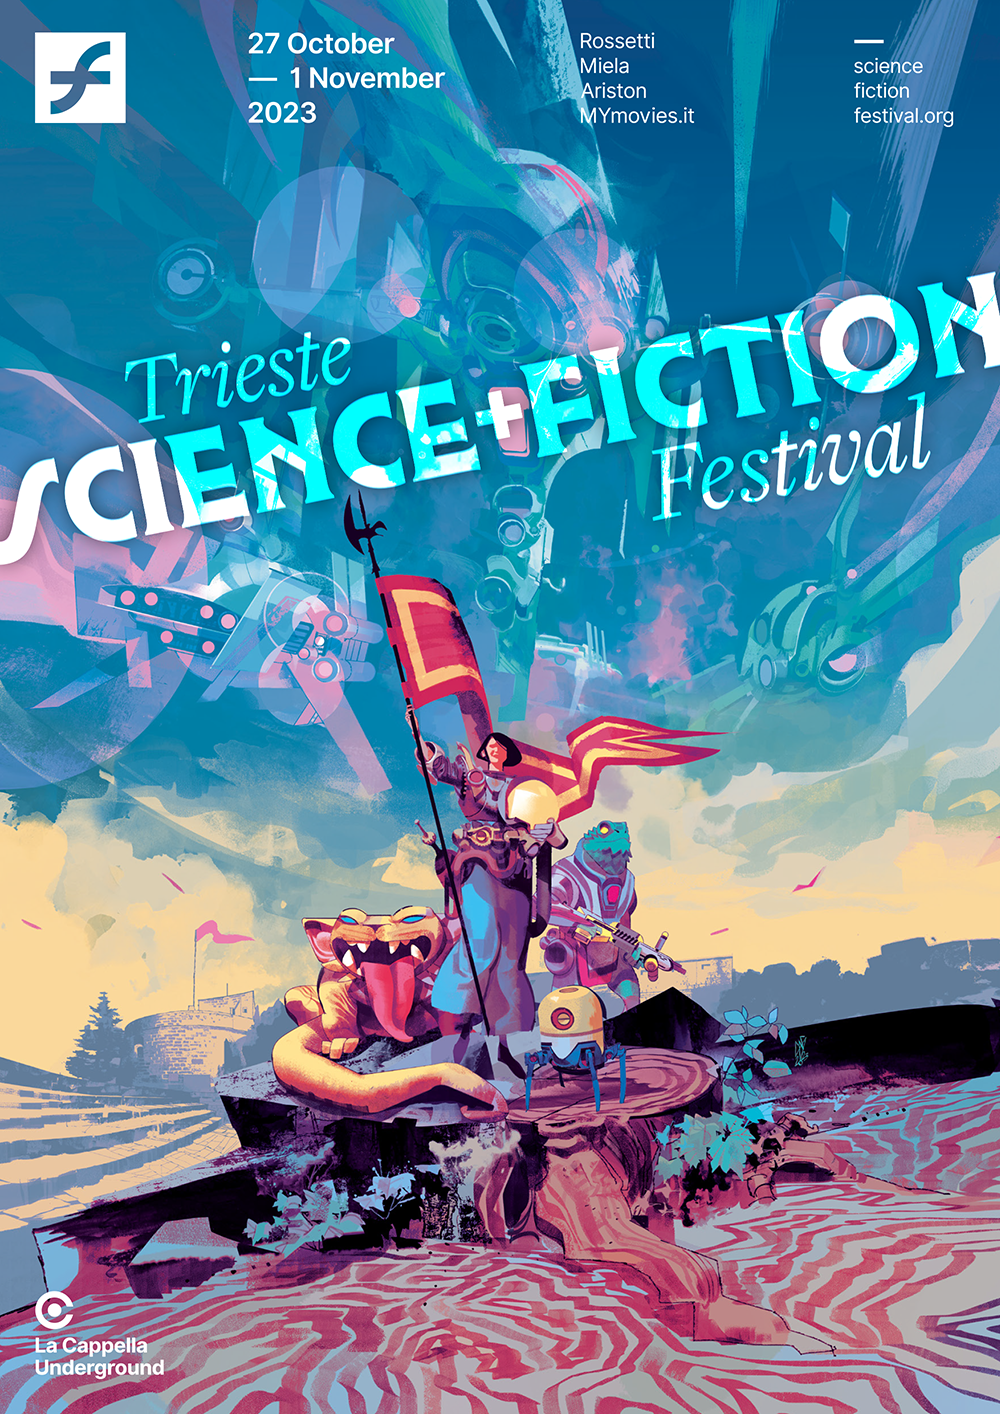 il poster di gigi cavenago per il trieste science fiction festival 2023 - nerdface